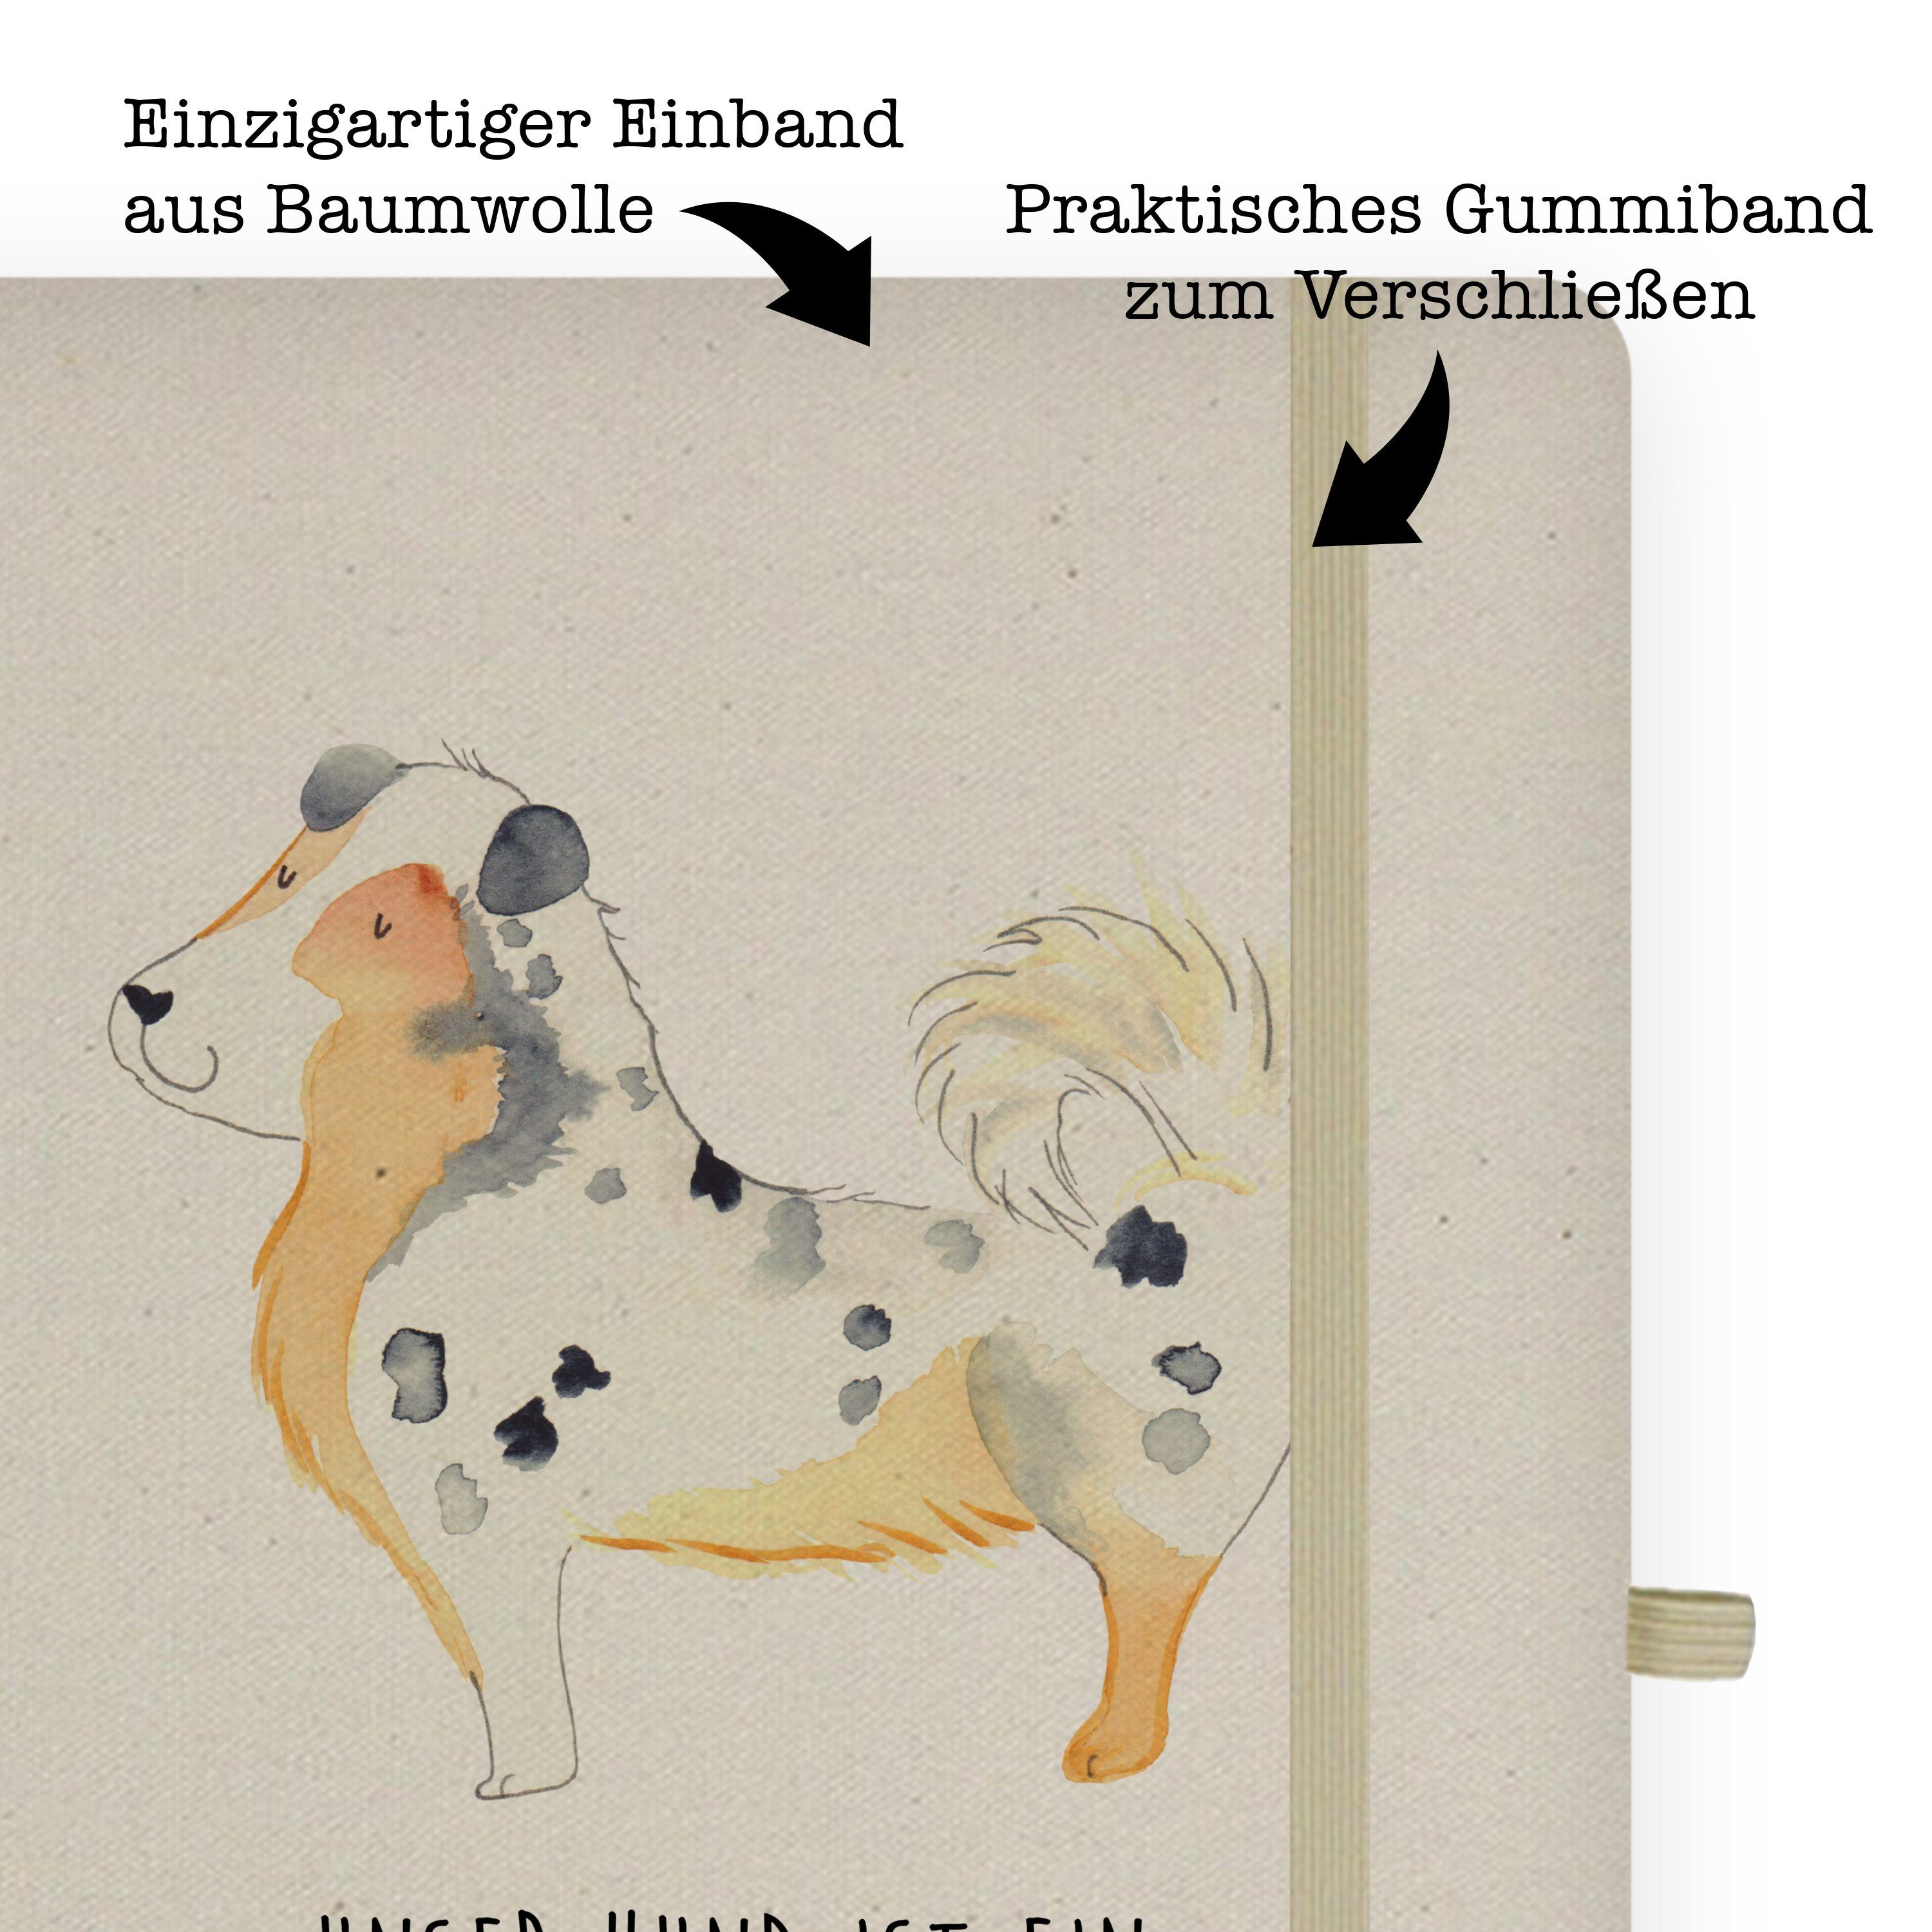 Lebkuchenhaus Adressbuch, & Notizen, & Mrs. - Panda Mr. Mr. Geschenk, Transparent Winter, - Notizbuch Panda Mrs.